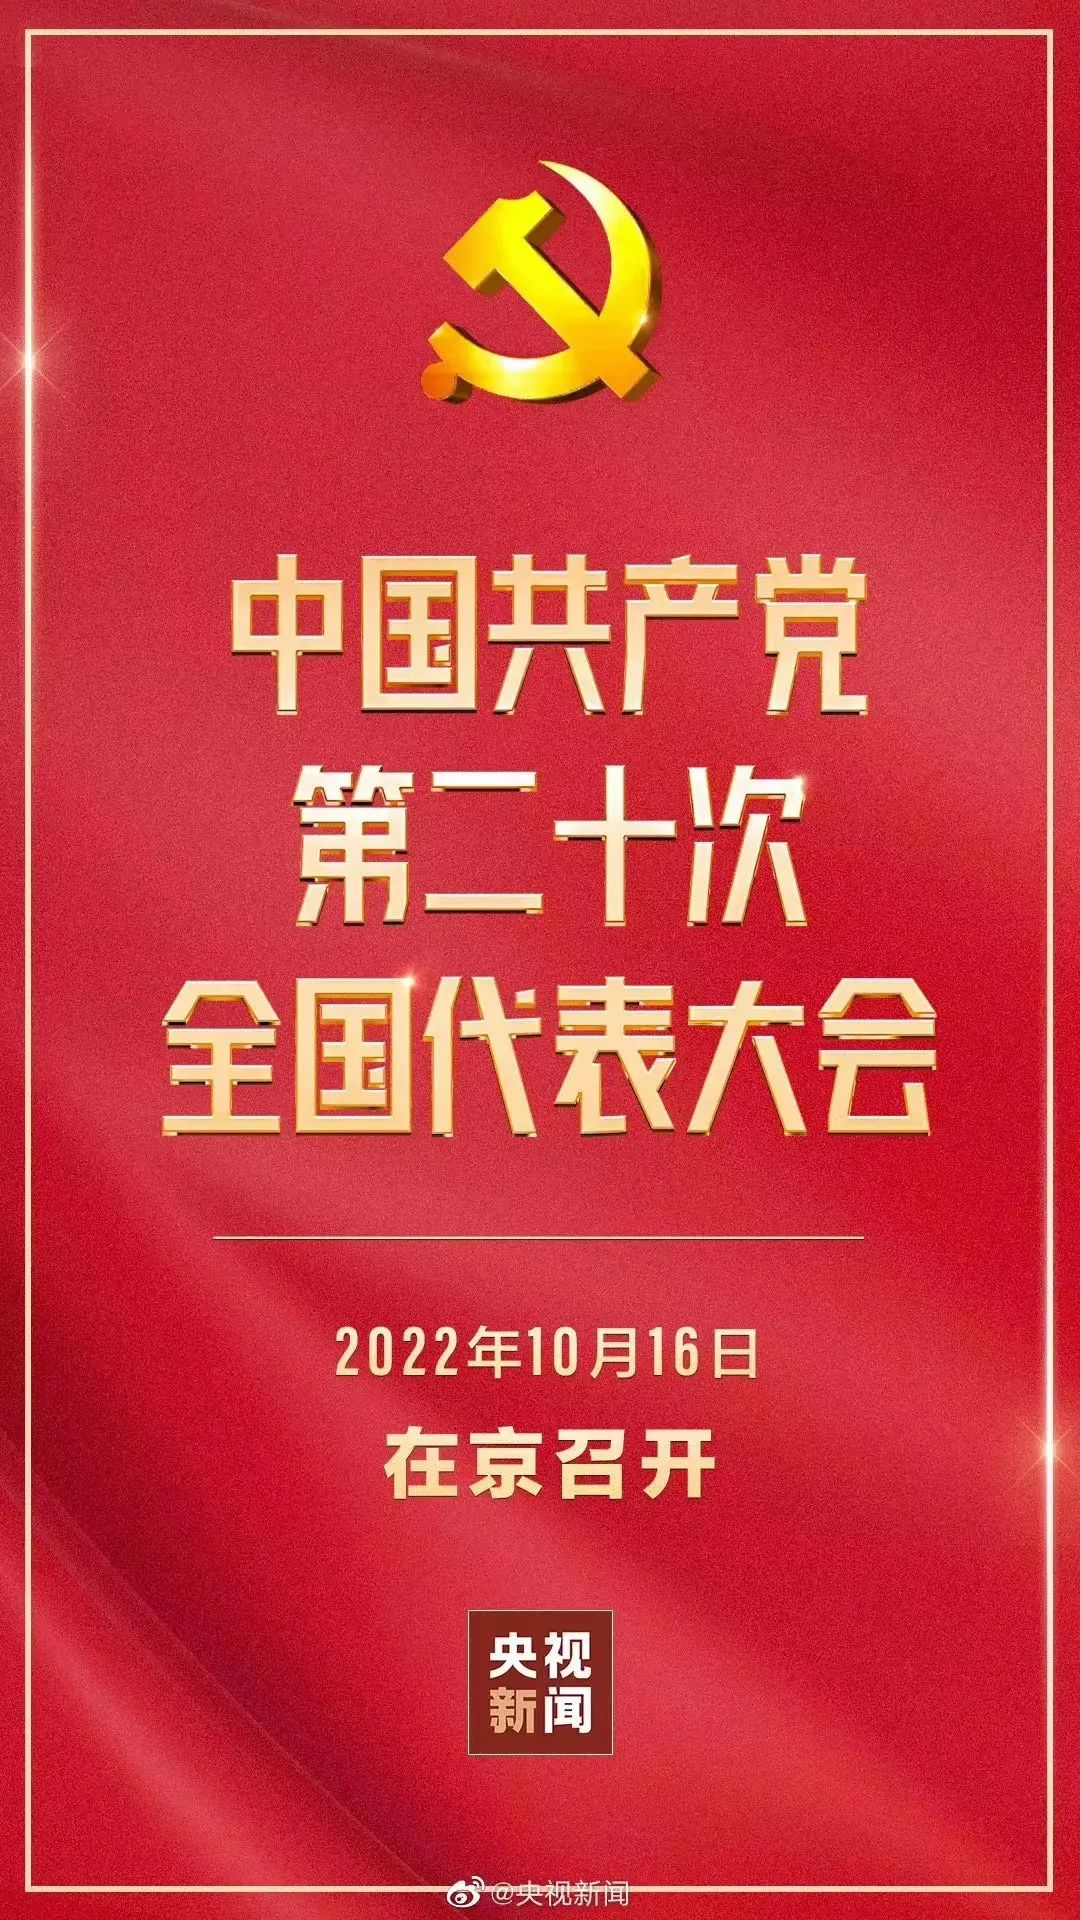 成都王府教职工集体收看中国共产党第二十次全国代表大会开幕会